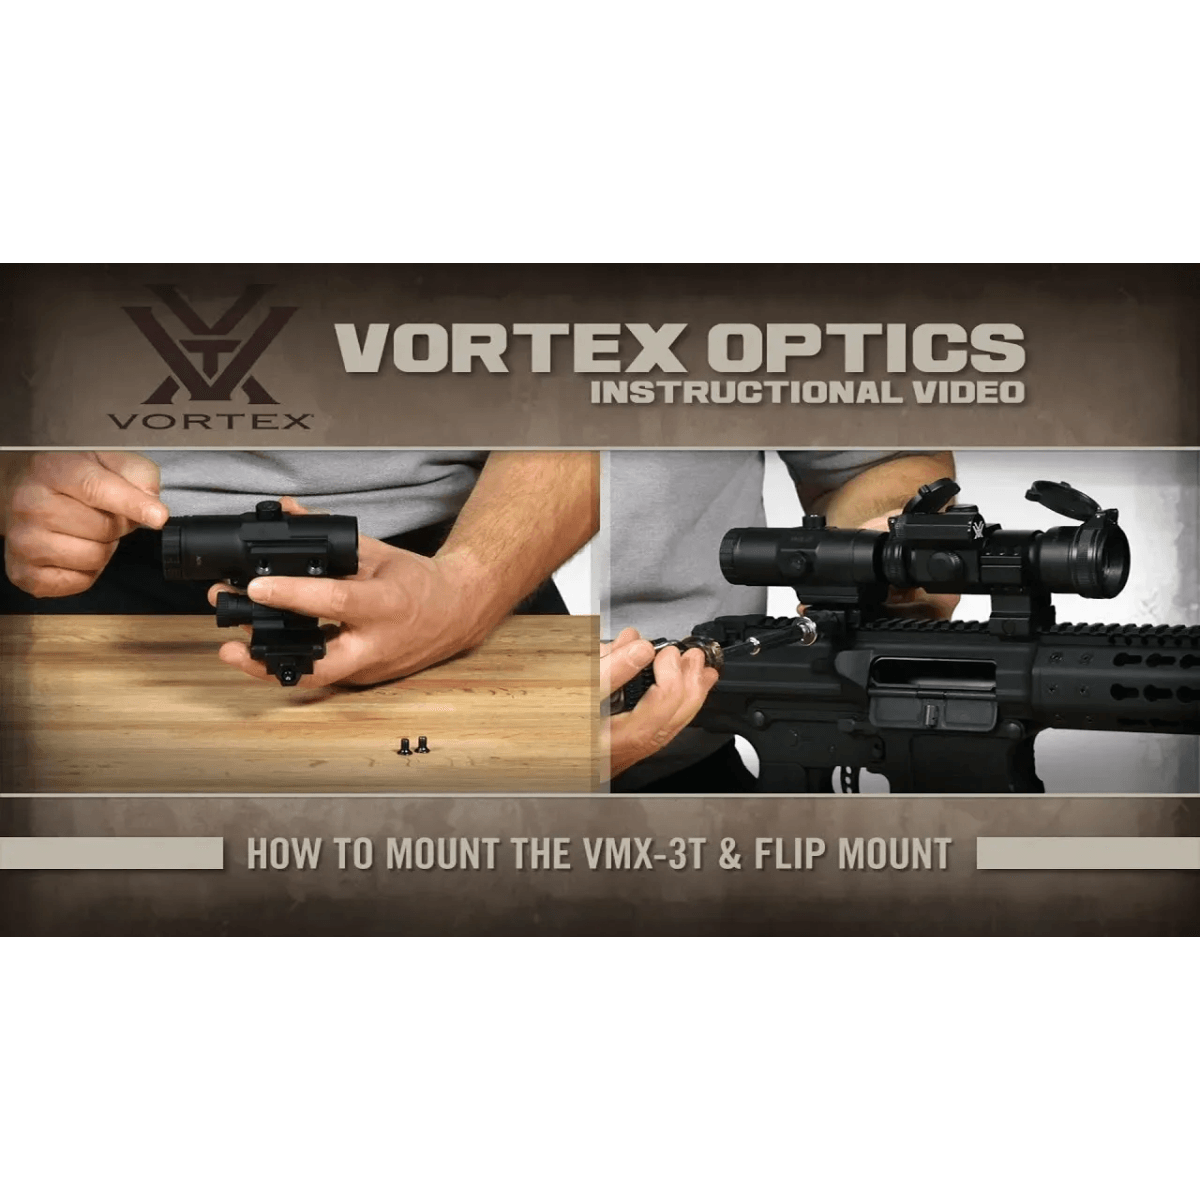 Vortex Optics VMX-3T Magnifier - Als.com